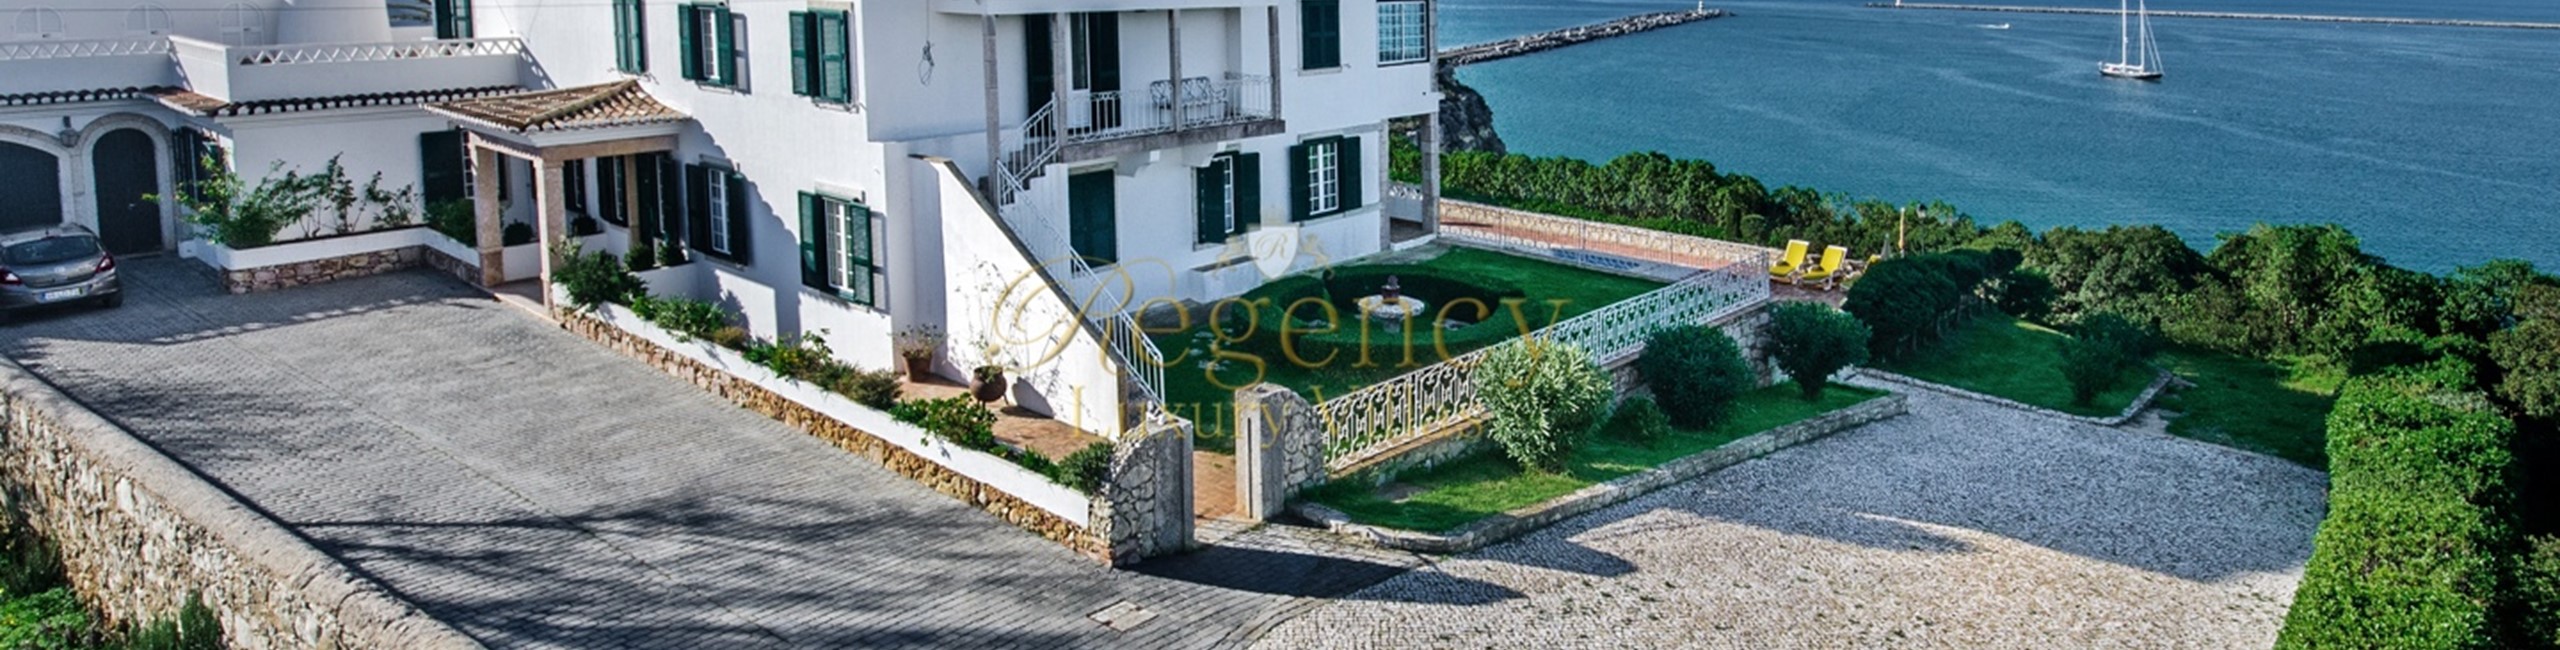 Villas To Rent In Ferragudo With Ocean View 9 Bedrooms Algarve